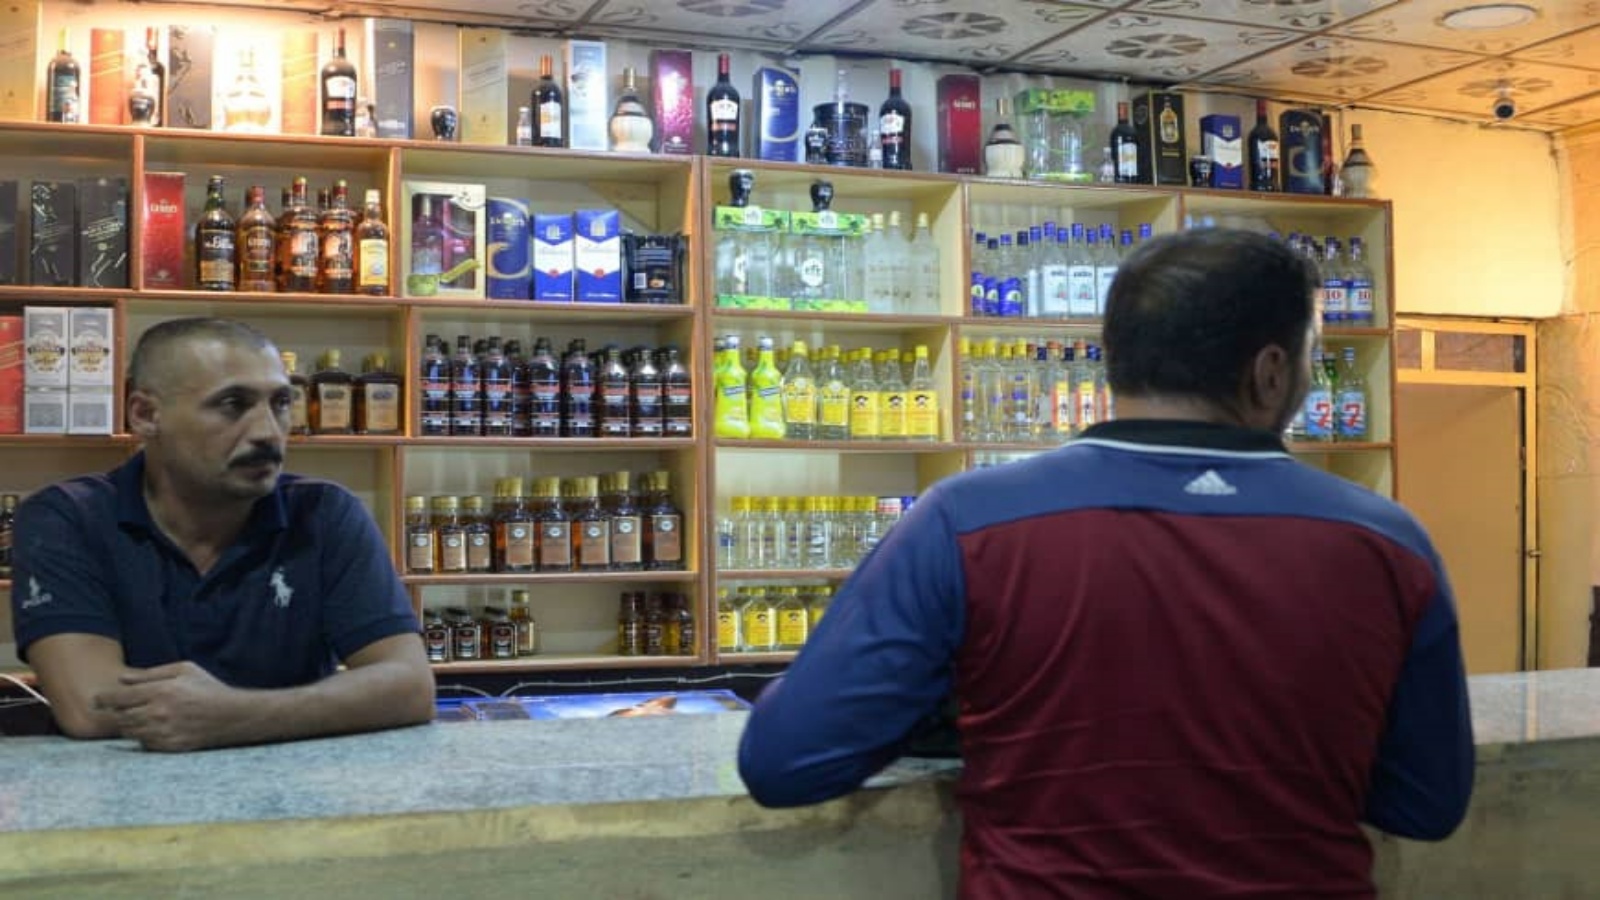 محل عراقي لبيع المشروبات الكحولية